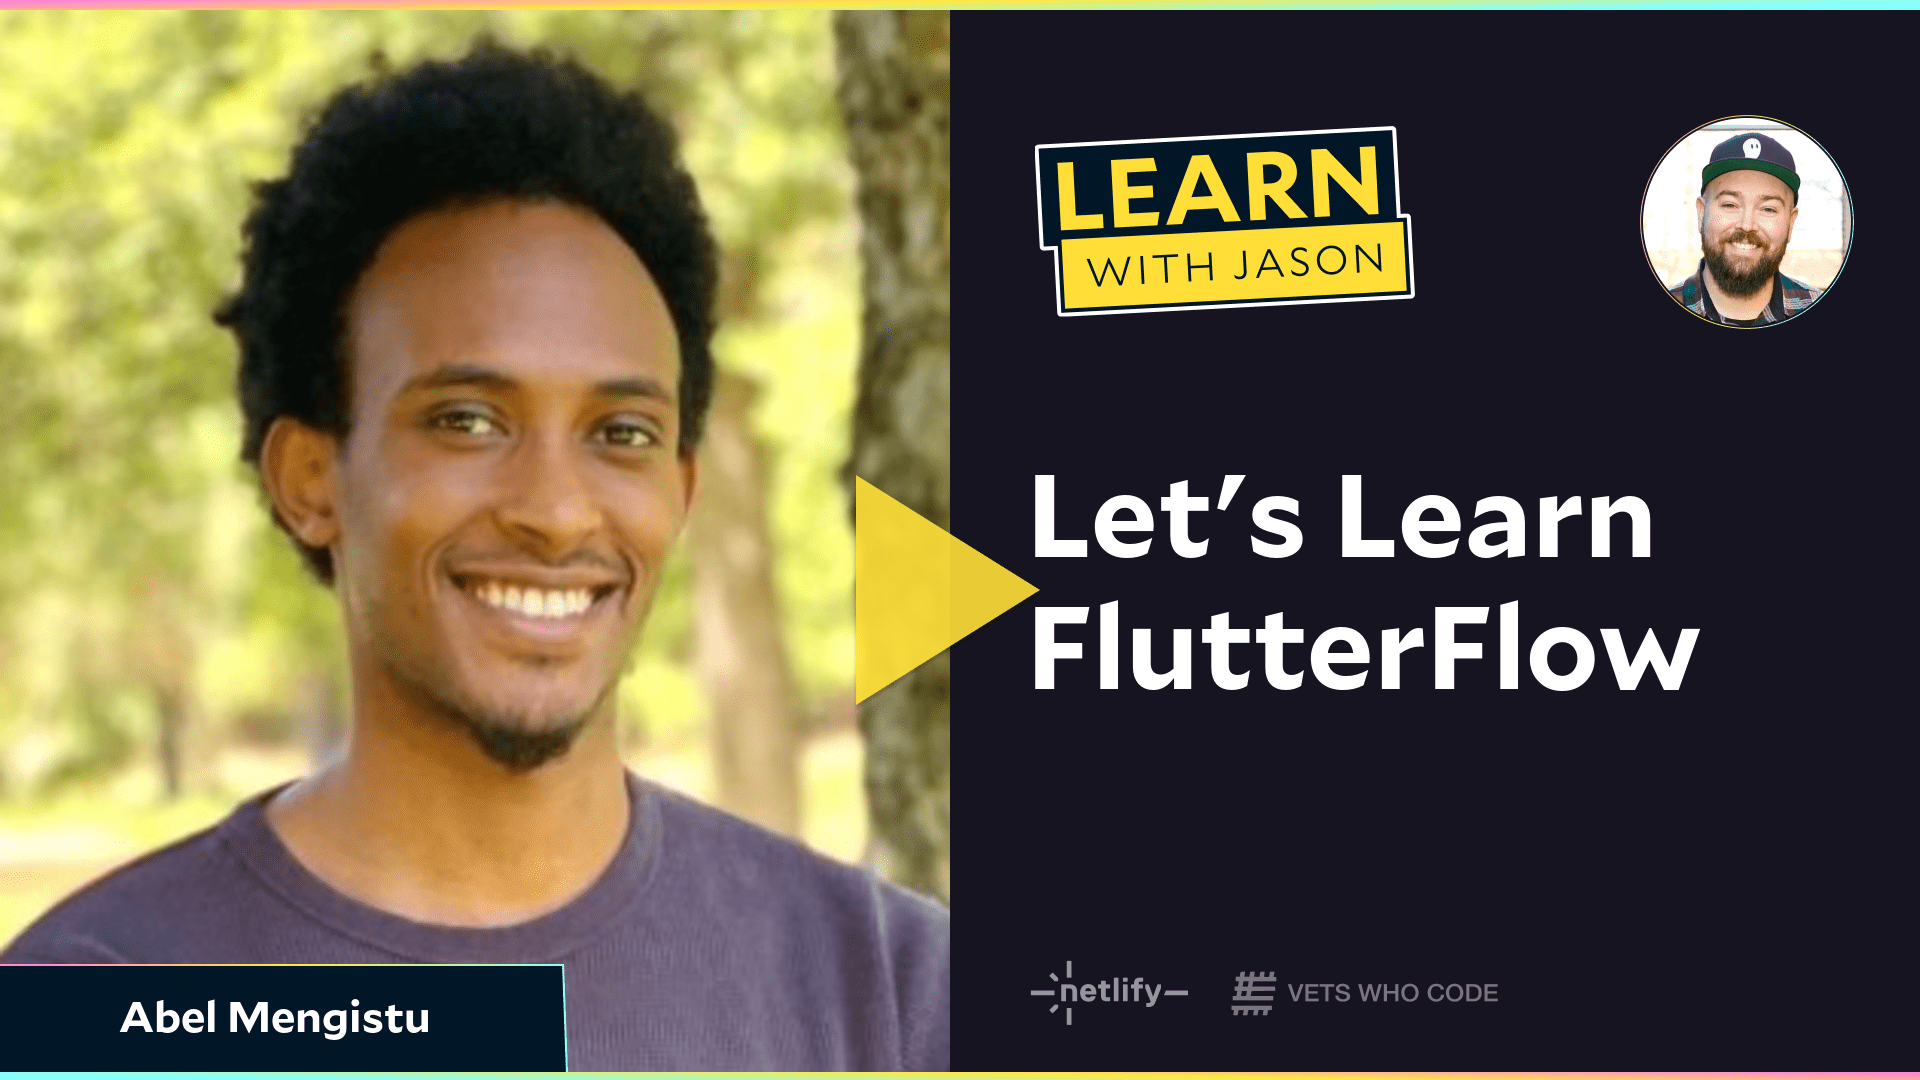 Let's Learn FlutterFlow (with Abel Mengistu)